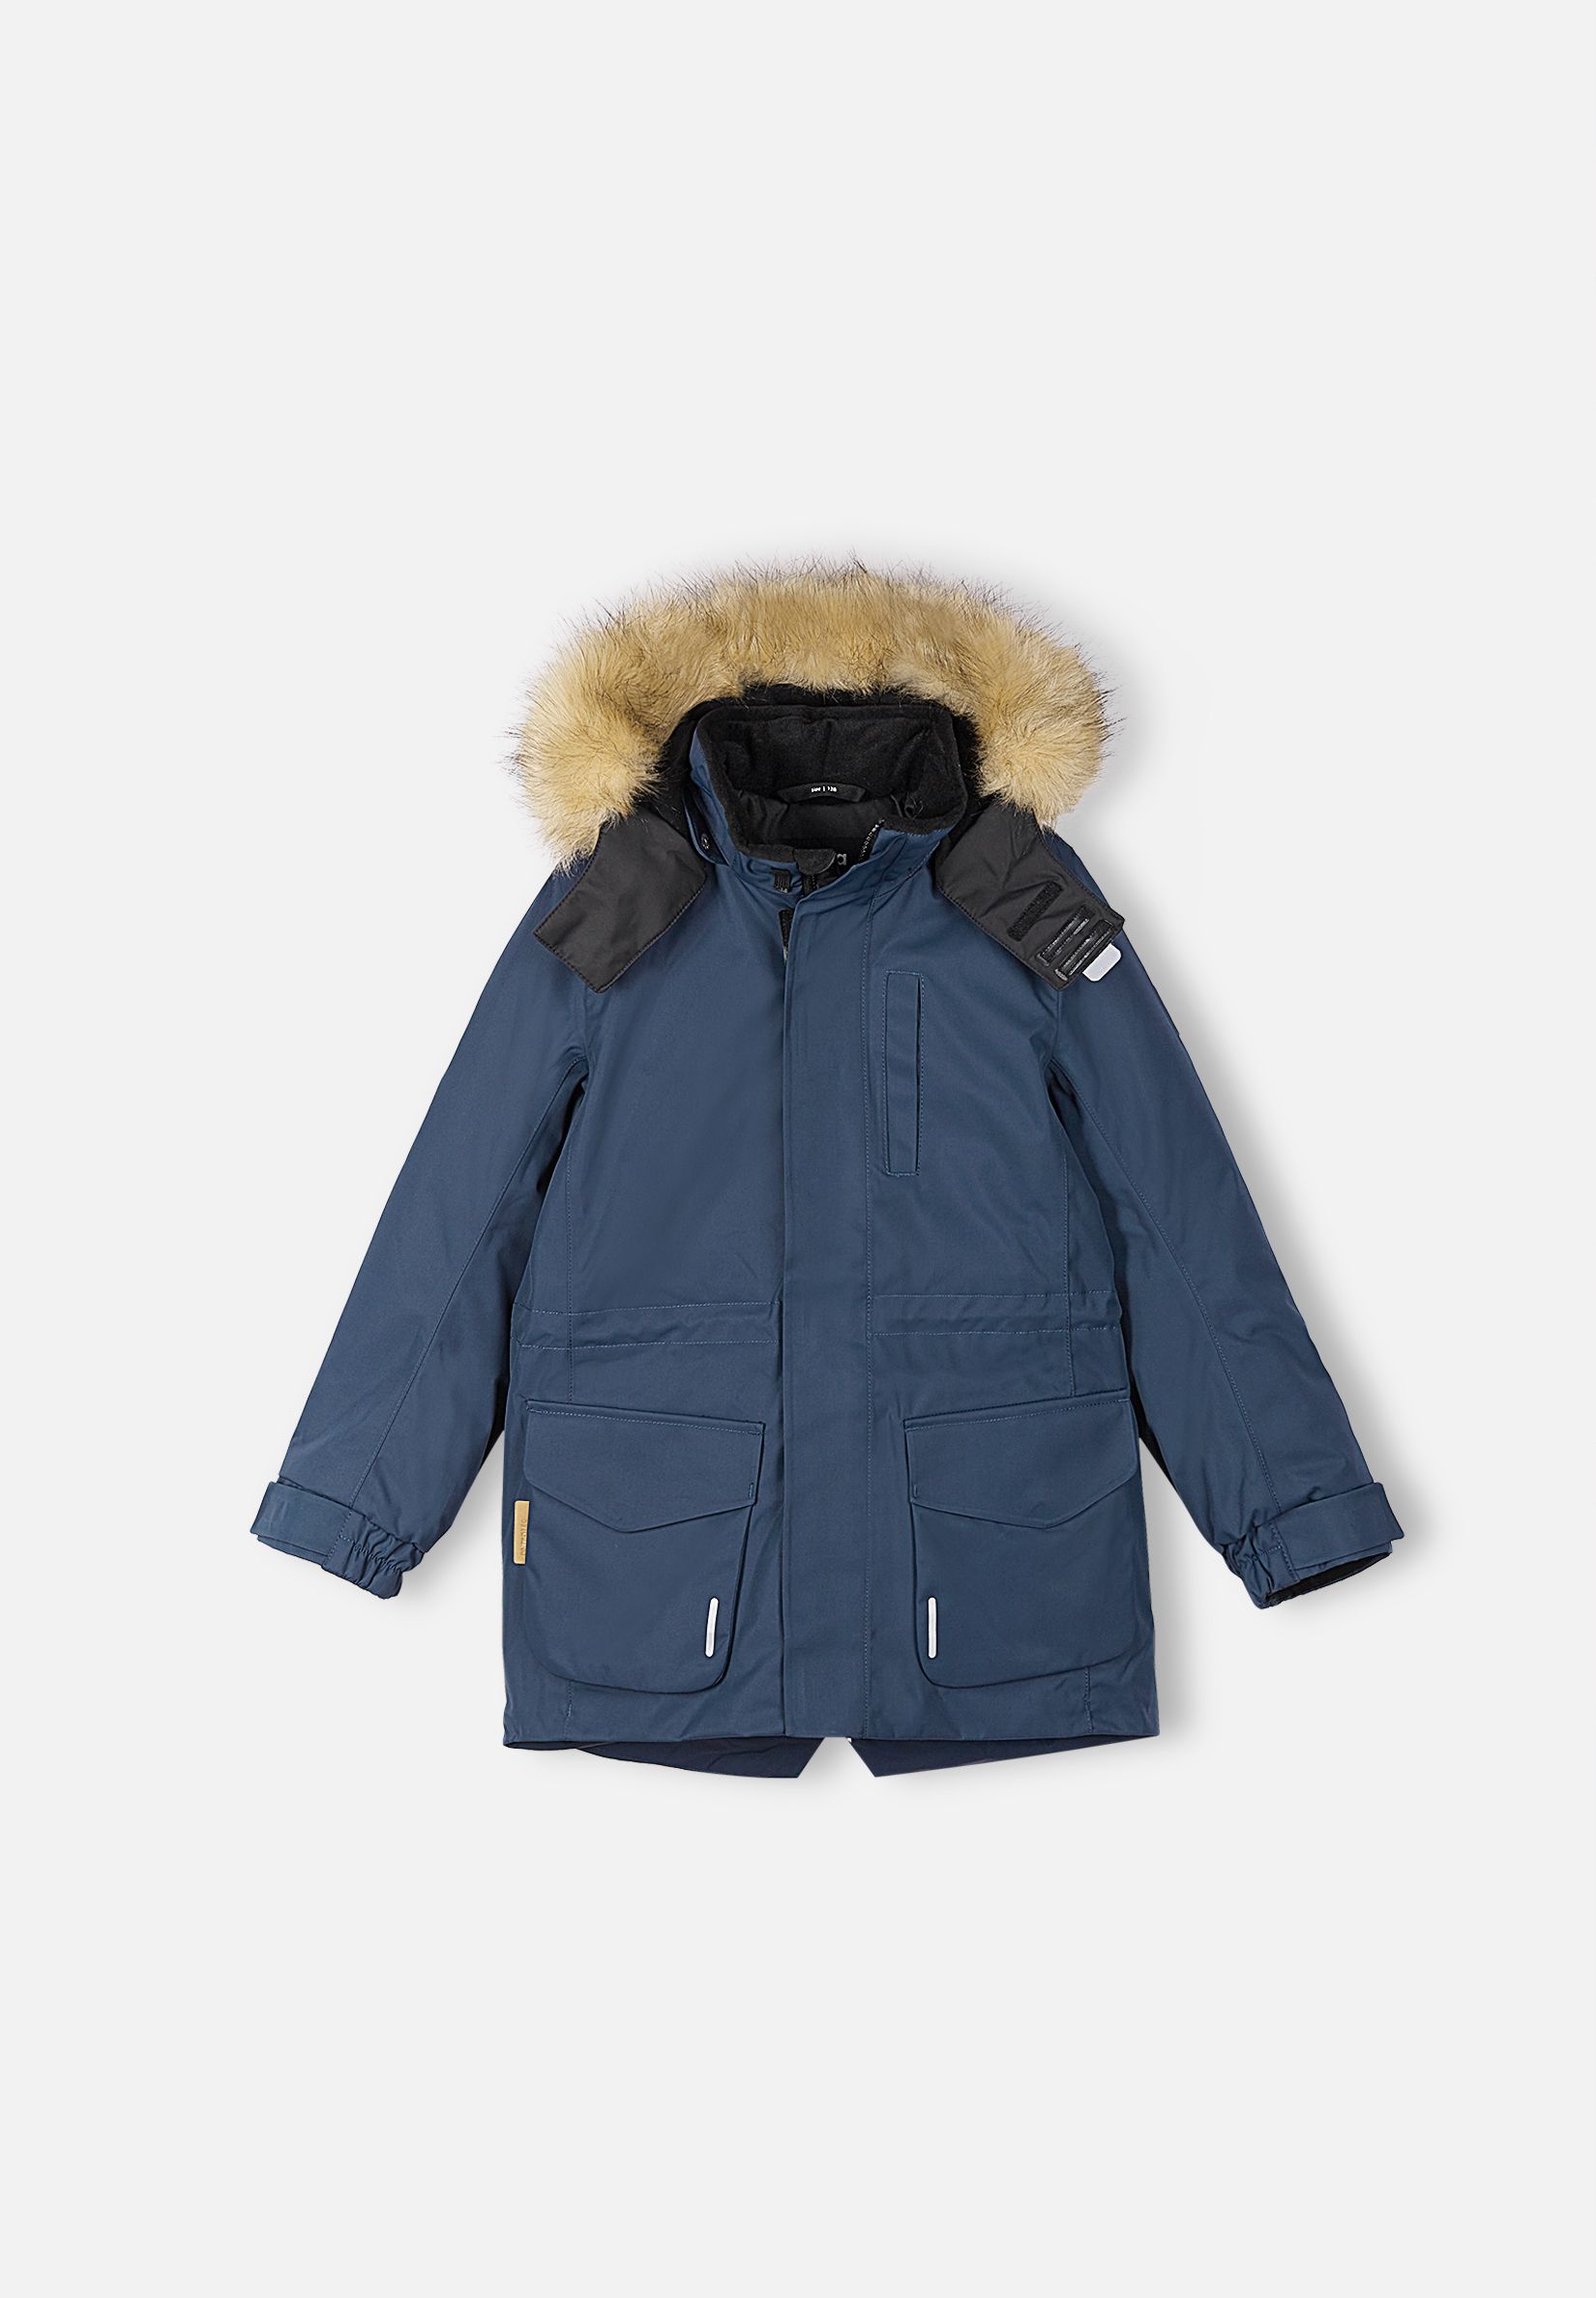 Куртка детская для мальчика Reima 5100105A-6980